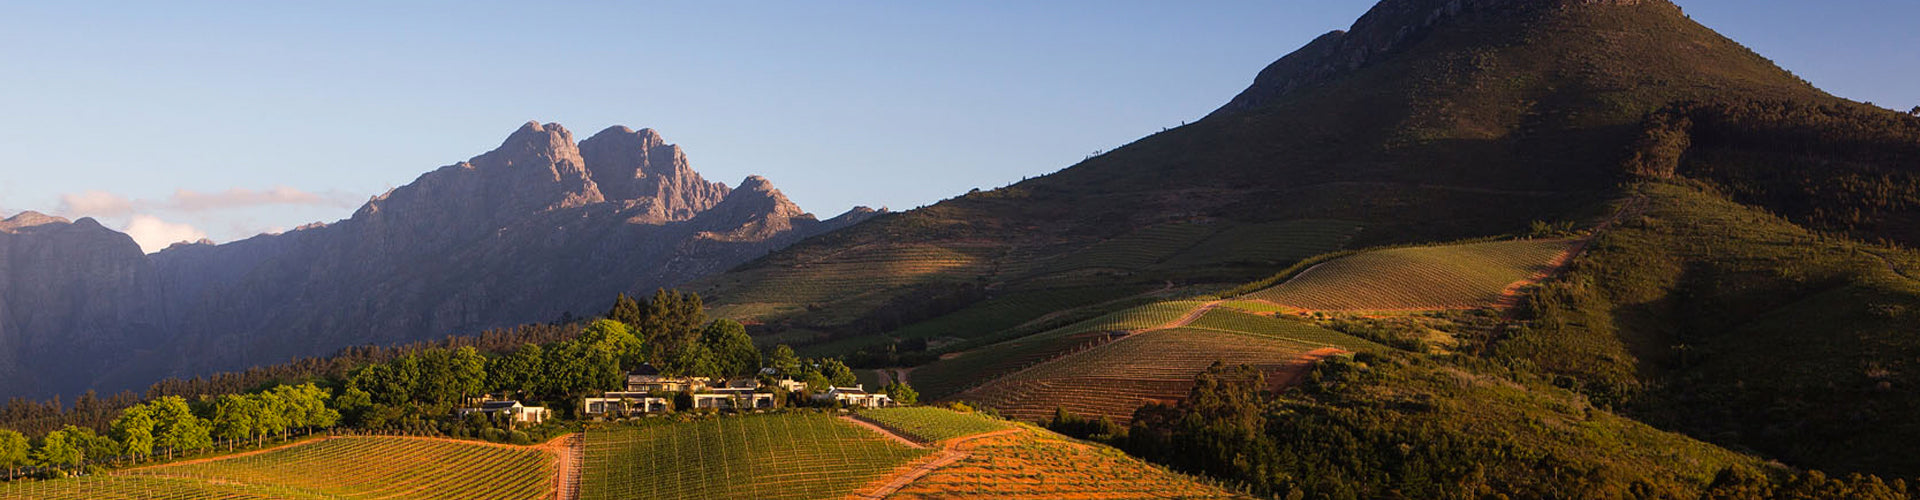 Delaire Graff Vineyards in Stellenbosch South Africa